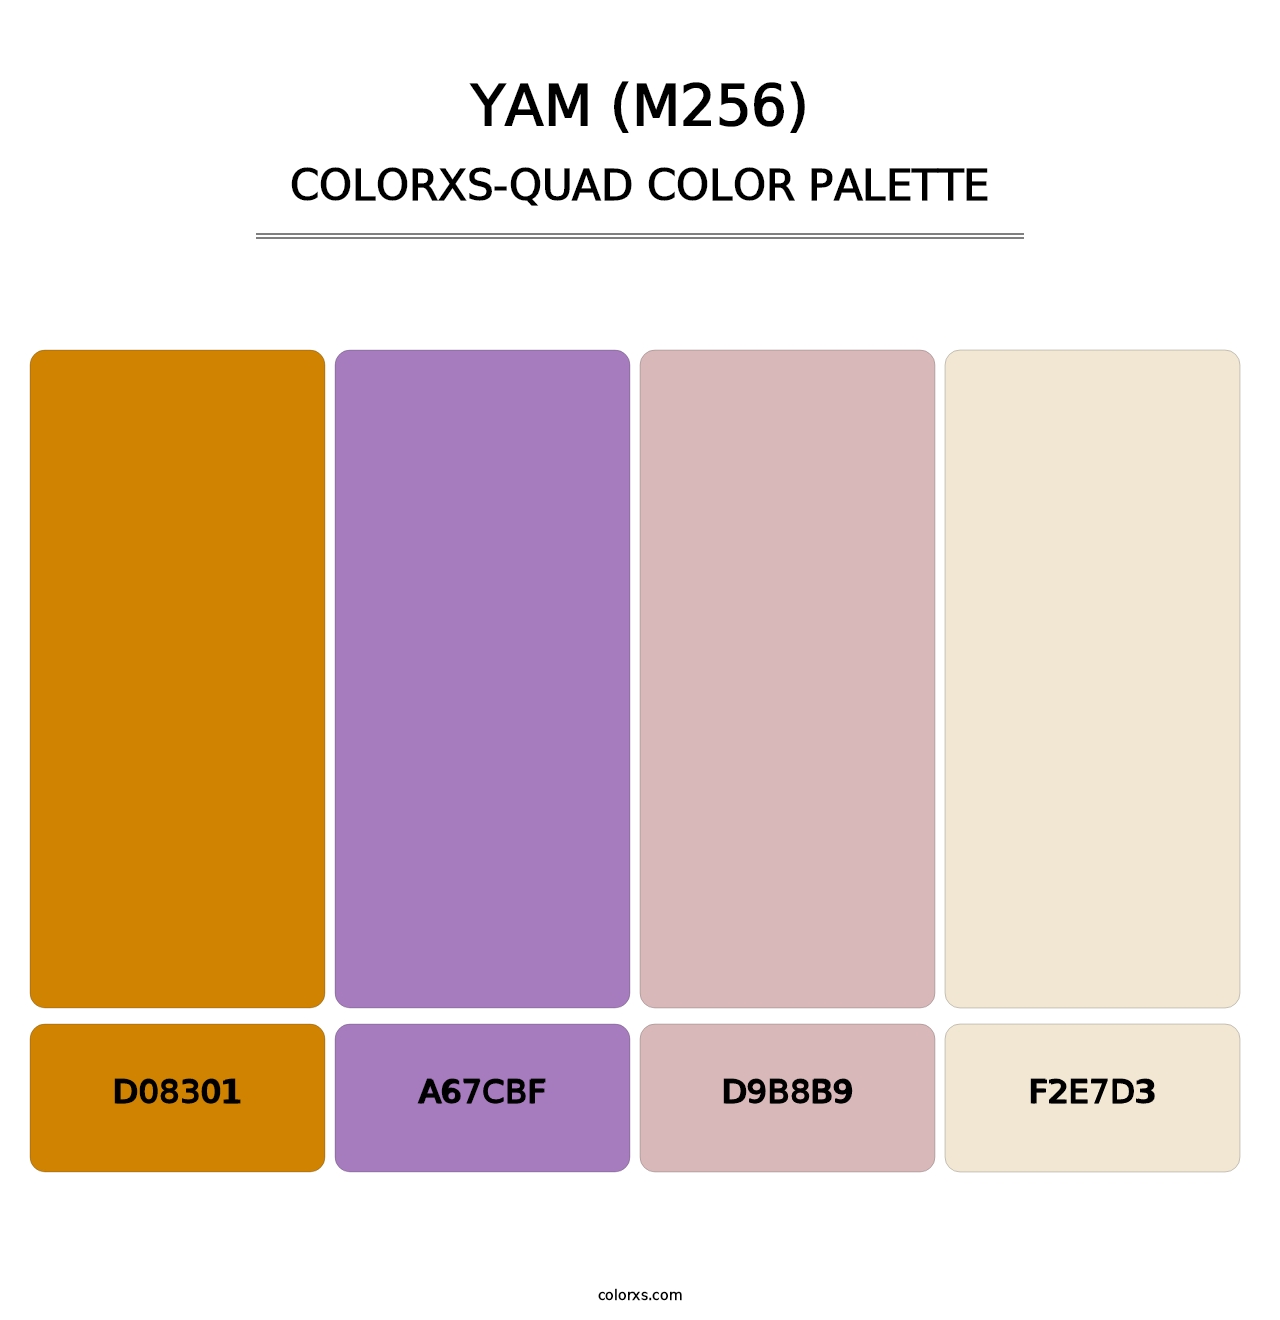 Yam (M256) - Colorxs Quad Palette